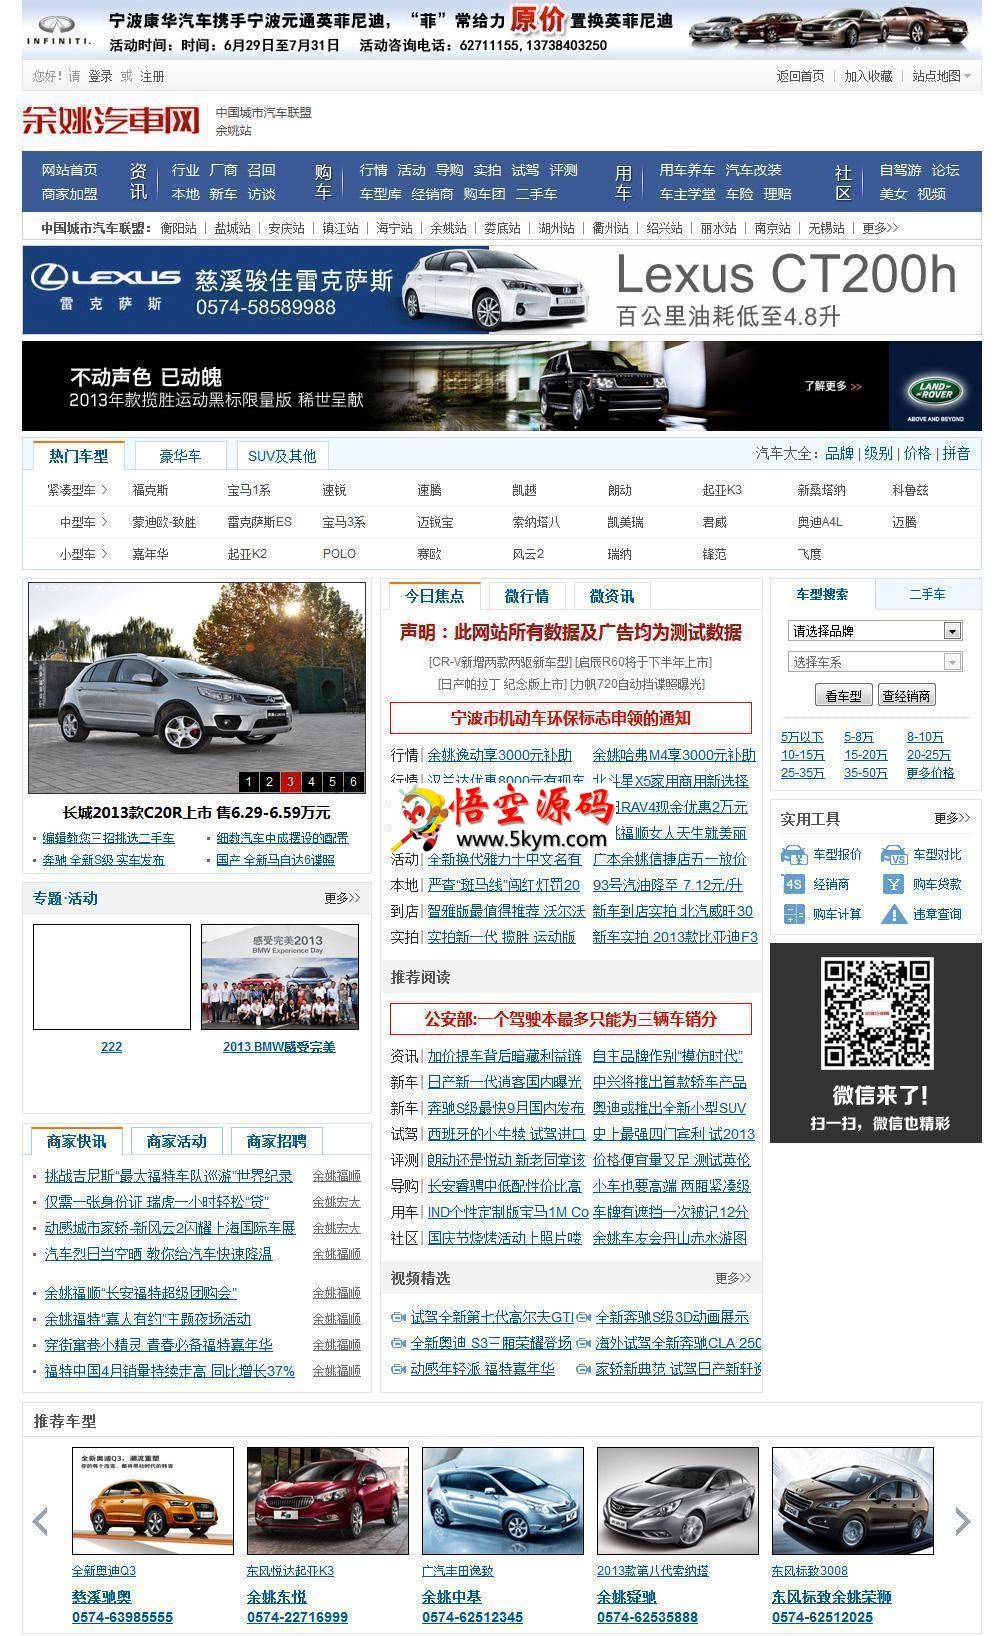 汽车网程序E-AUTO X3.0 v2019.9.30